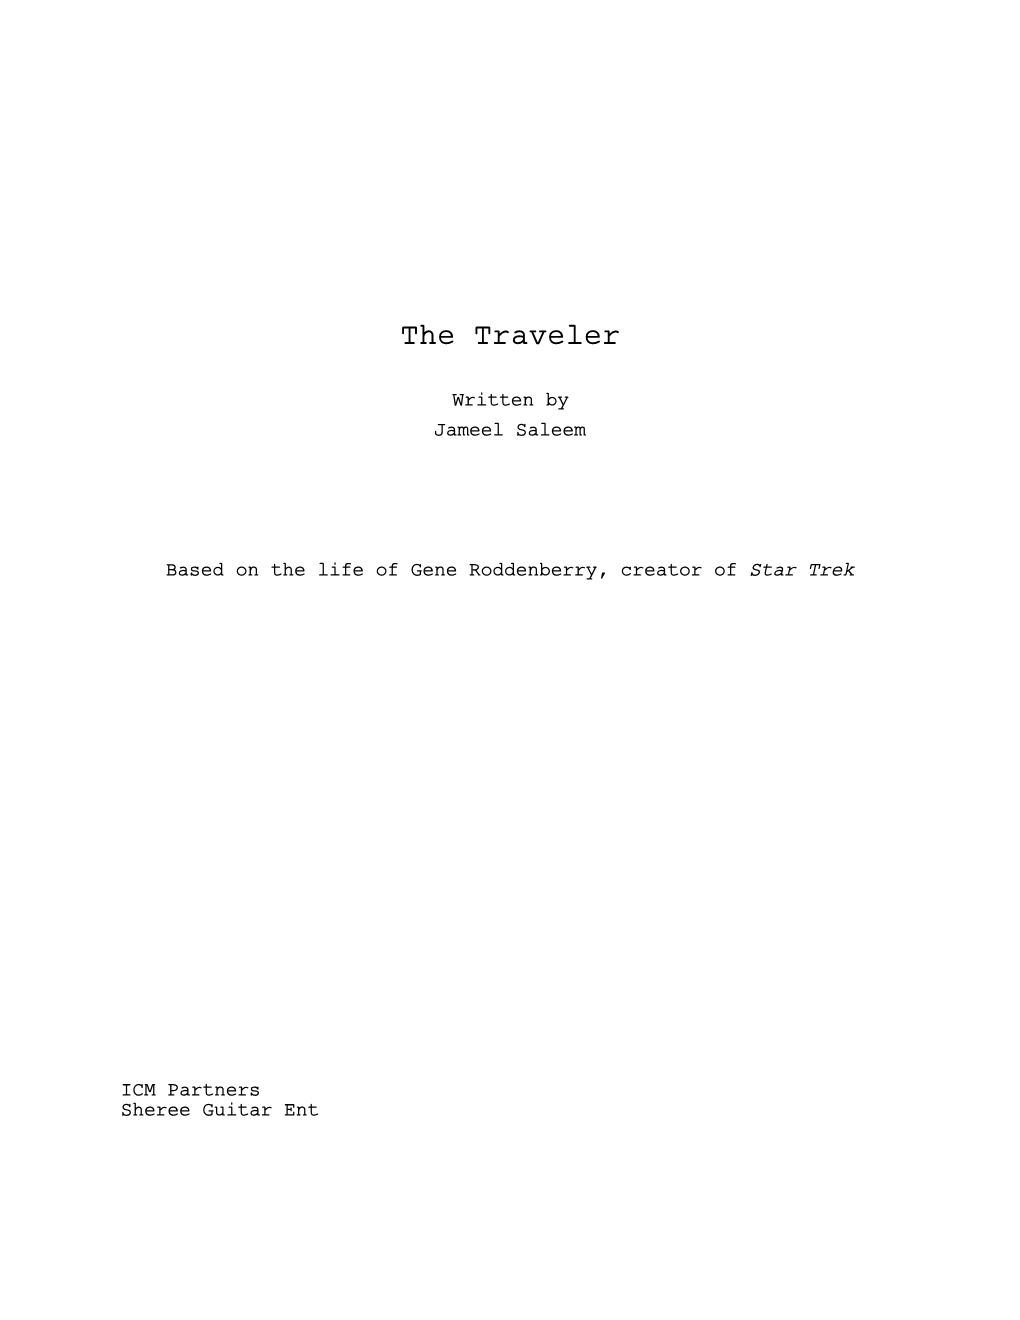 The Traveler 3 8 20